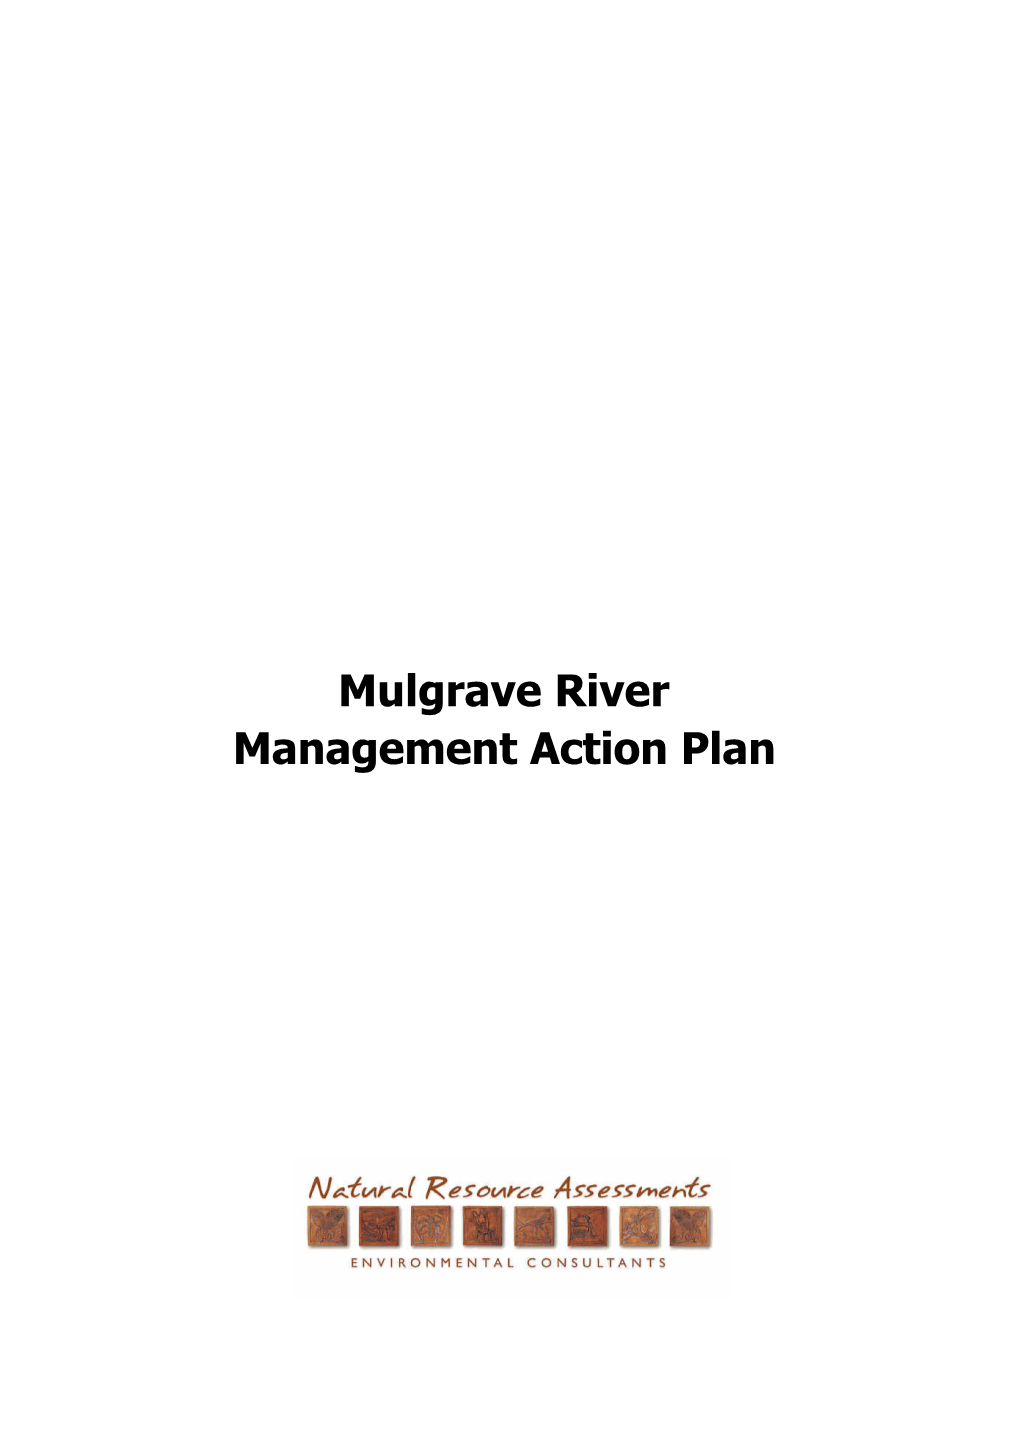 Mulgrave River Management Action Plan.Pdf